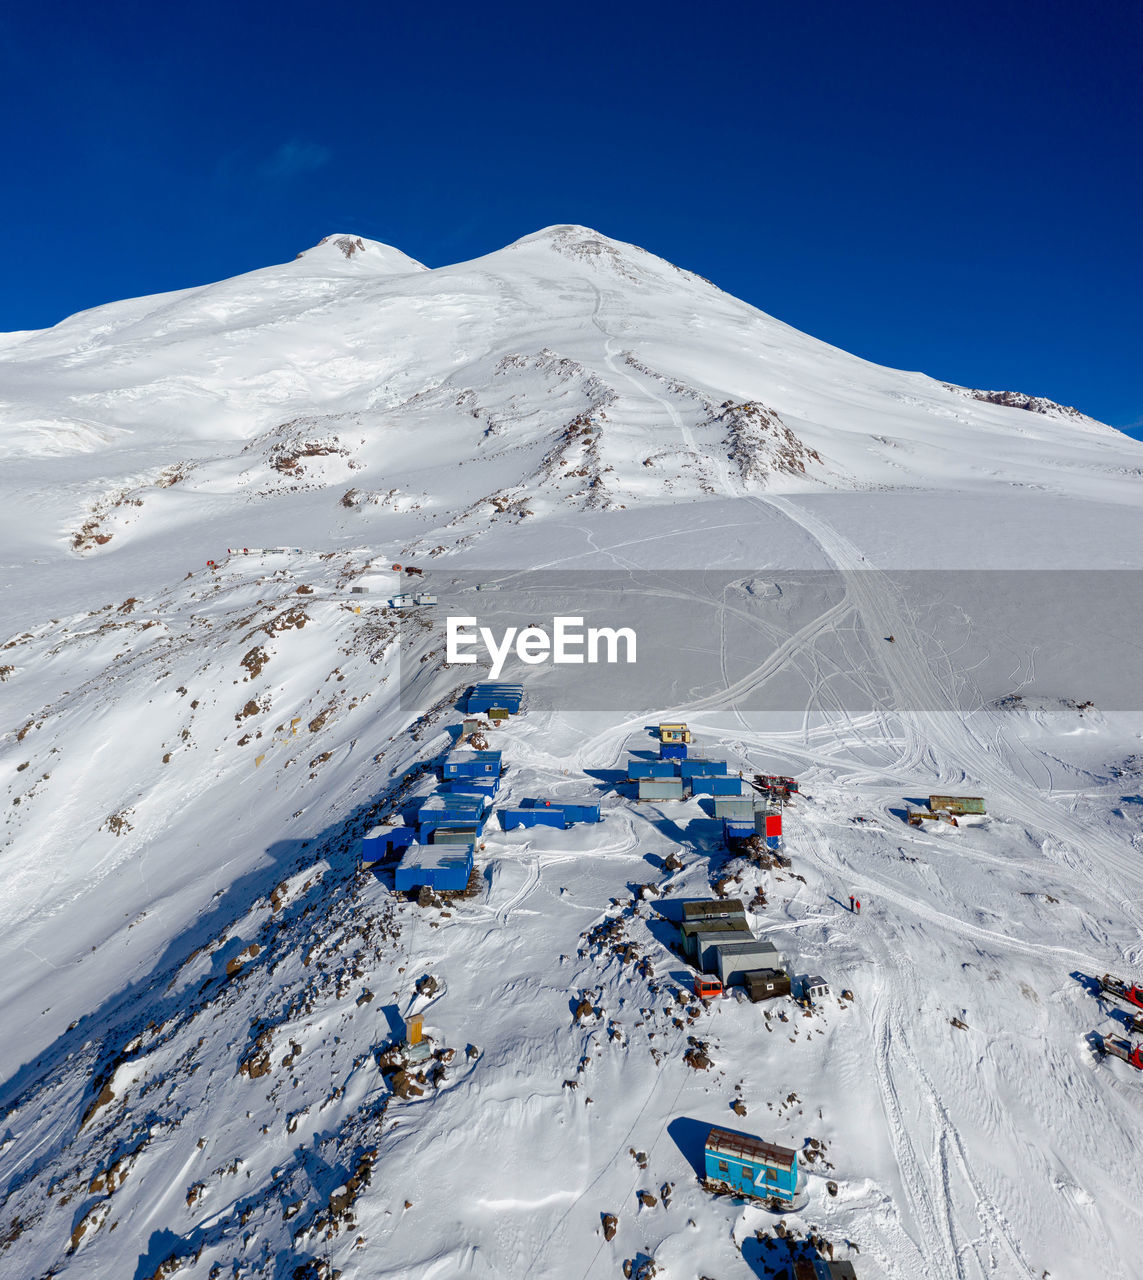 Elbrus summit, mountain landscape in the caucasus region